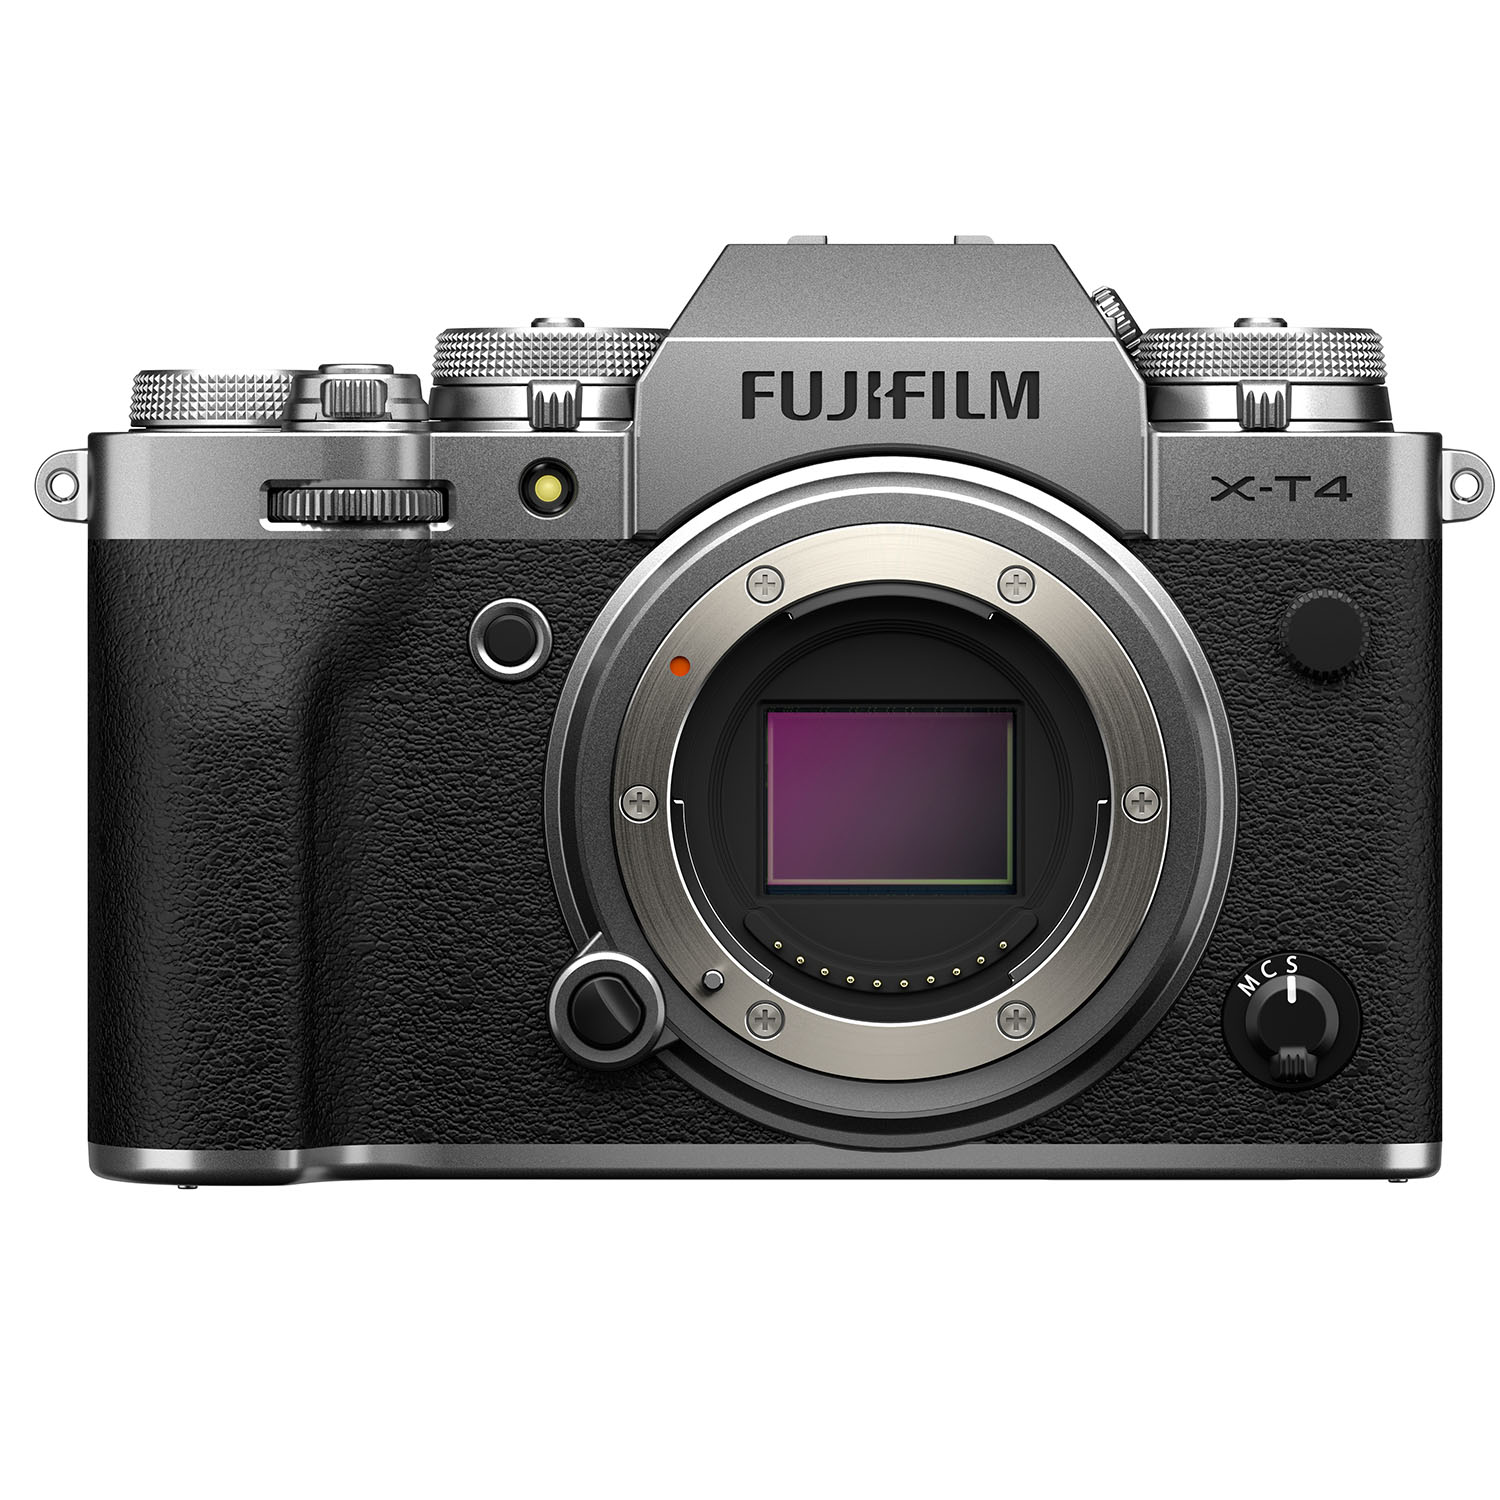 Fujifilm X-T4 Digital Mirrorless Camera